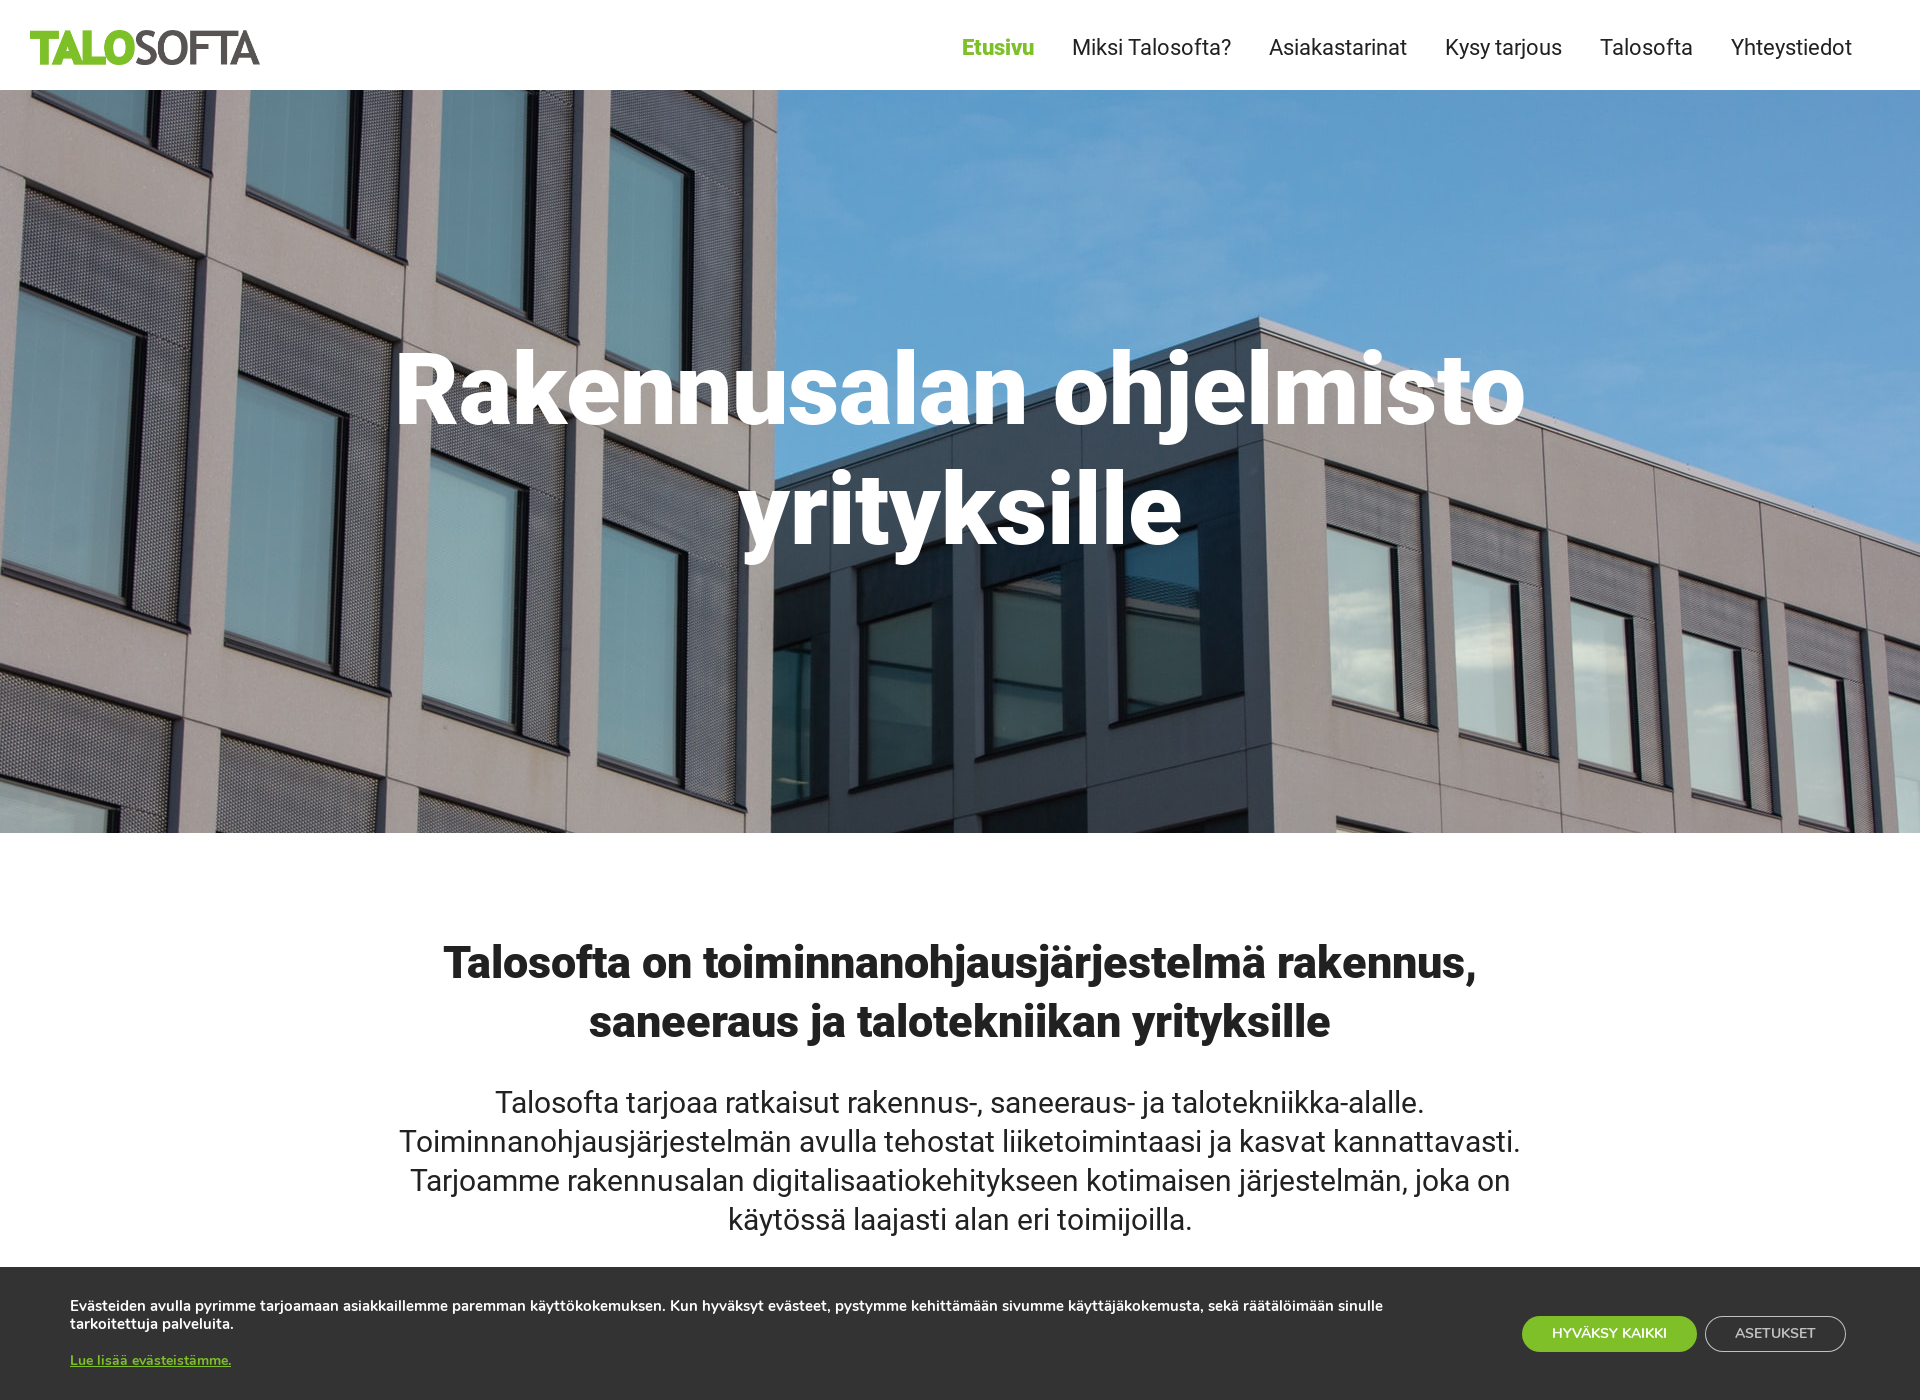 Screenshot for kayttosofta.fi